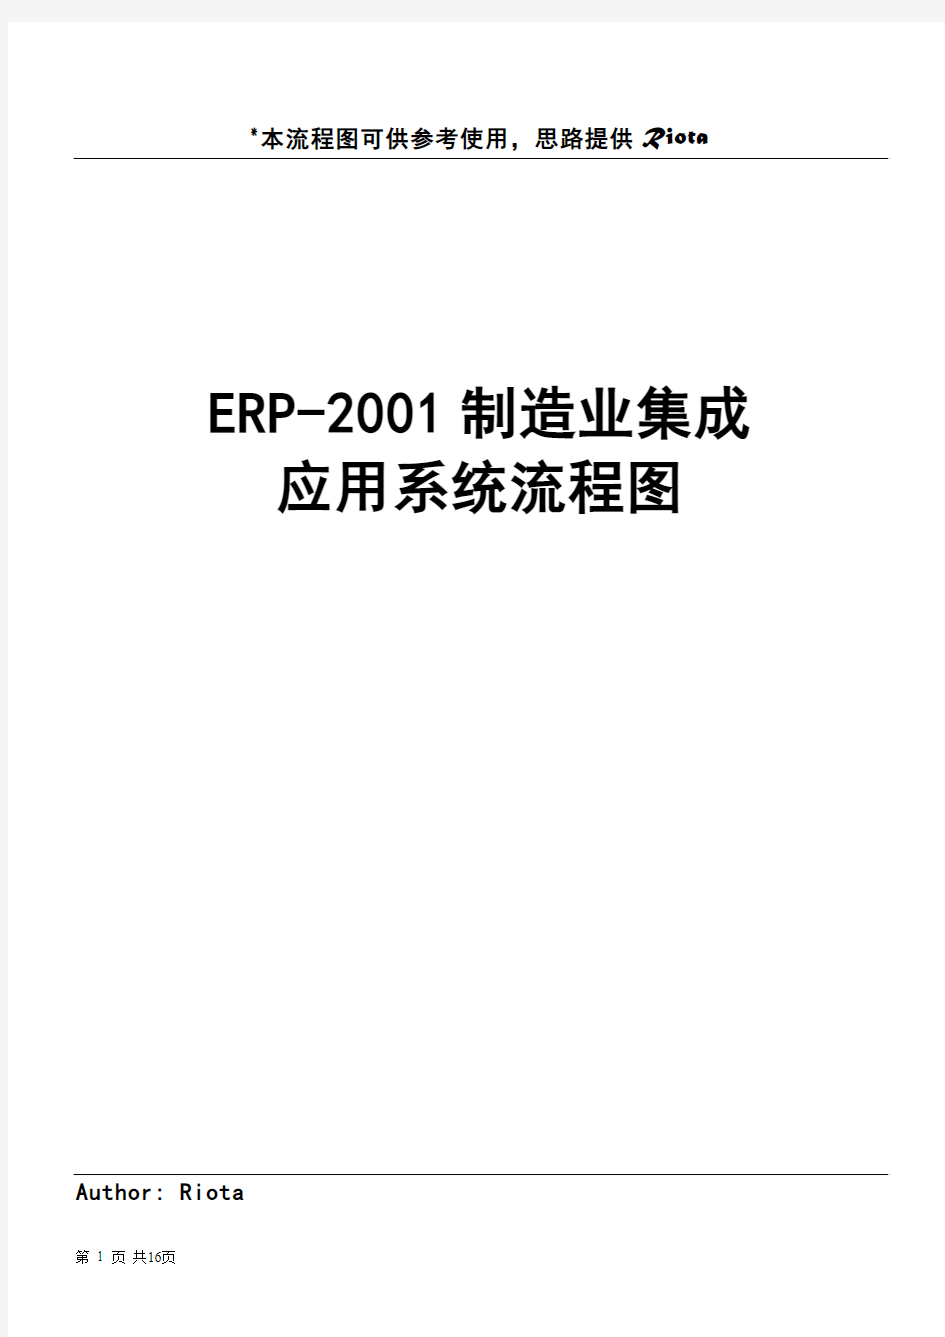 制造业ERP-流程图